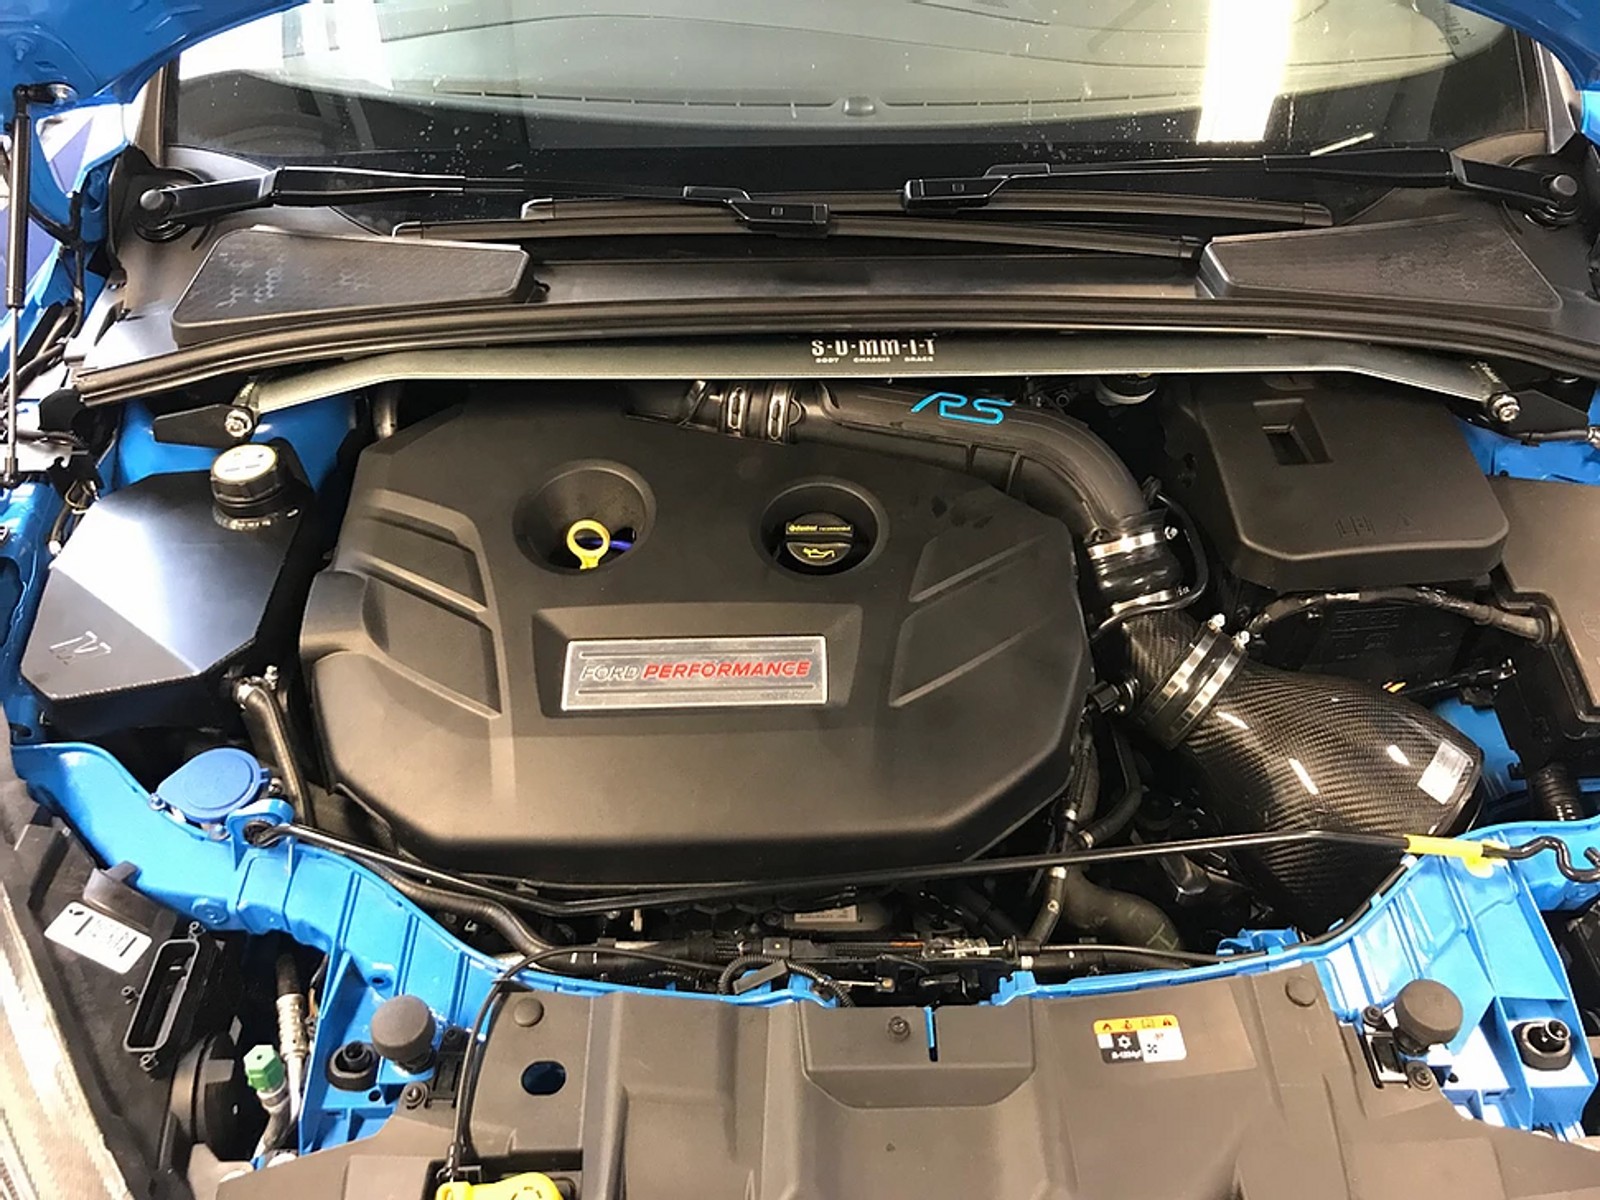 Ford Focus RS Tuning - locker über 500 PS möglich? Ausfahrt.TV